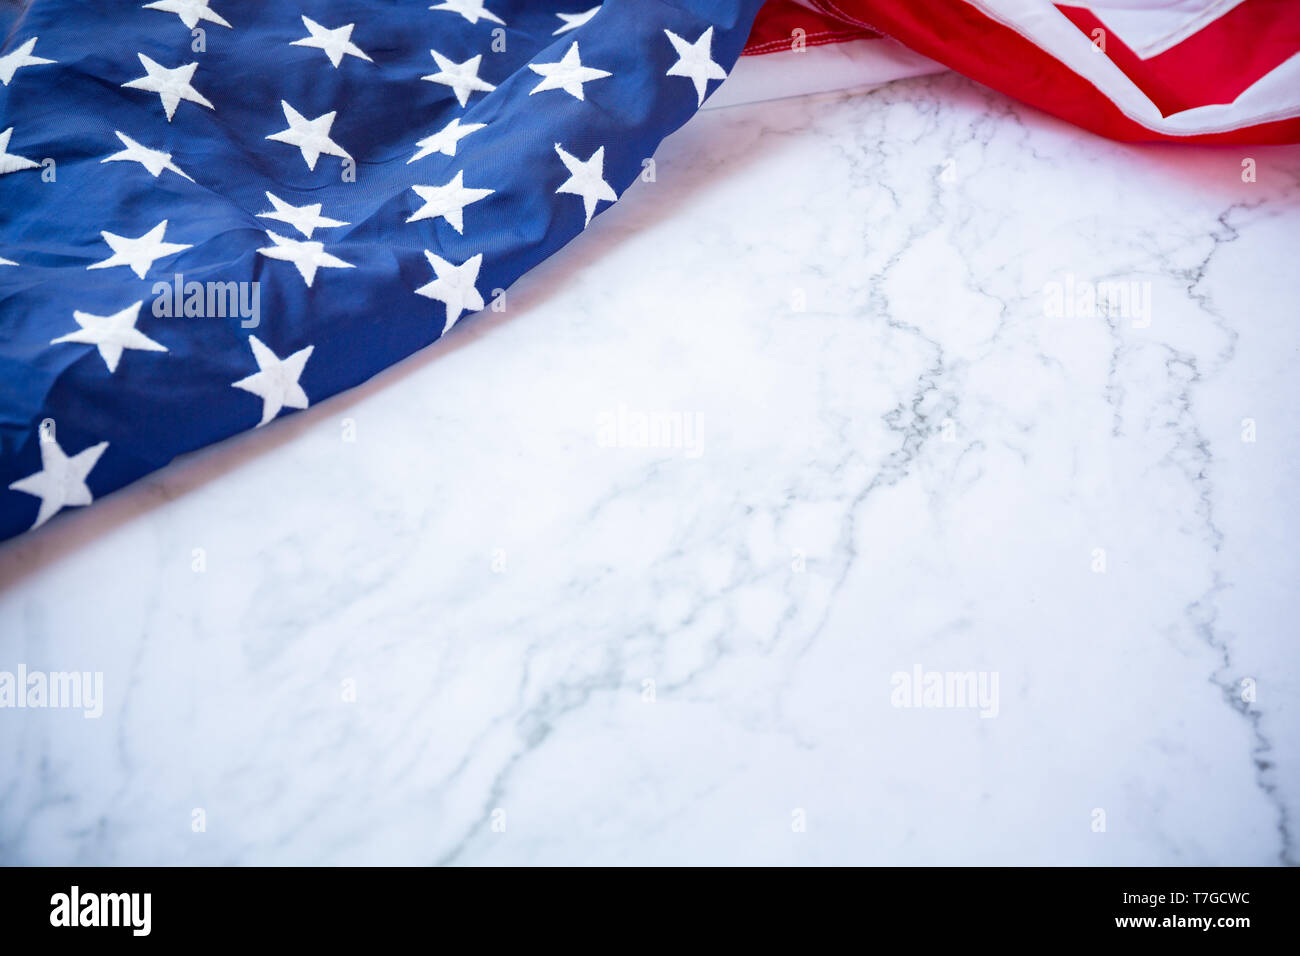 Amérique anciens drapeaux de couleur rouge couleur bleu concept pour USA 4  juillet Jour de l'indépendance, symbole de la liberté de la patriot sur le  marbre blanc Photo Stock - Alamy